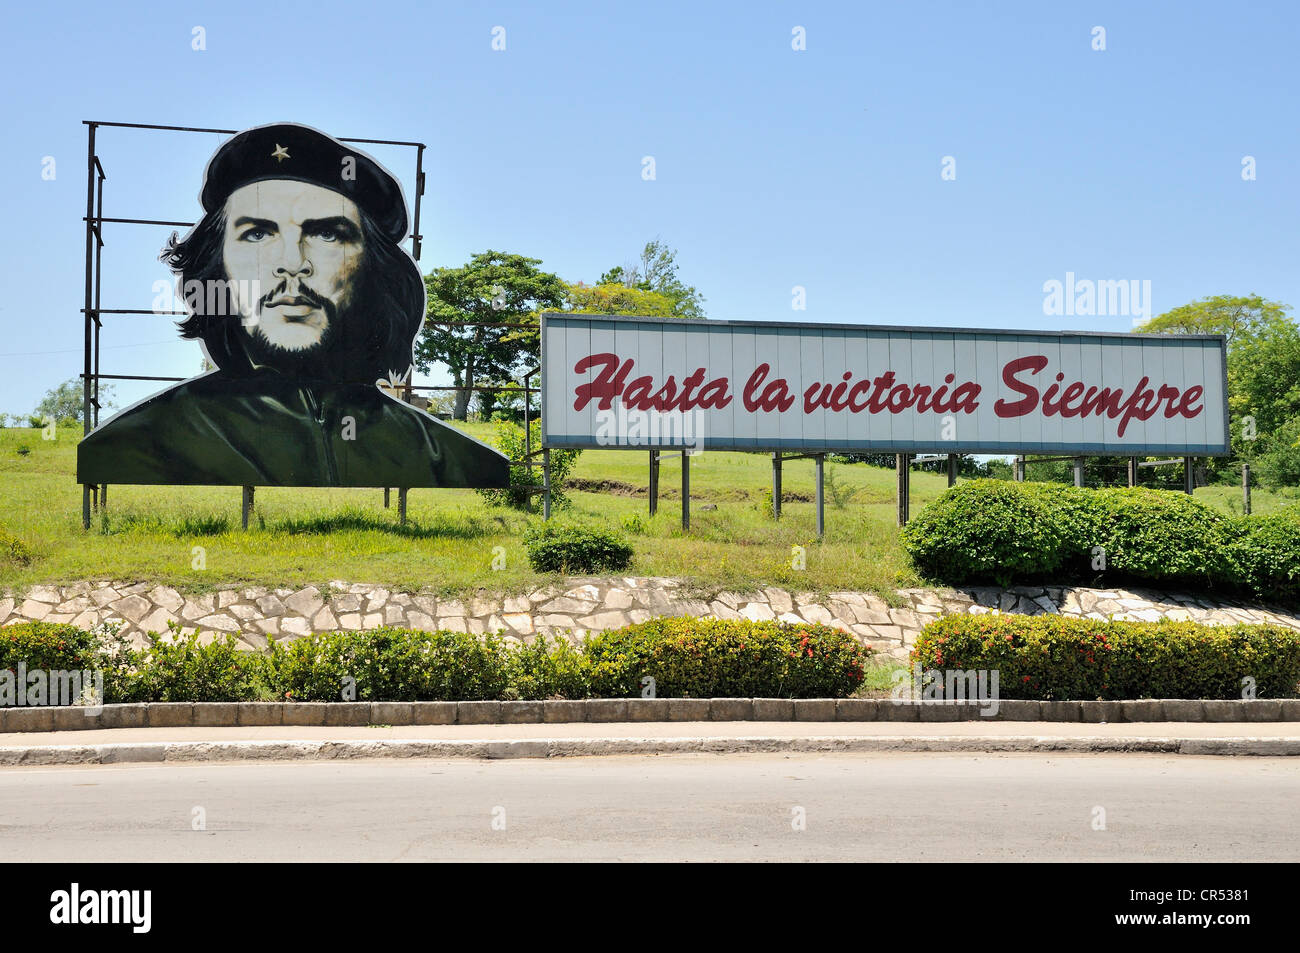 La propagande révolutionnaire, 'hasta la victoria siempre', espagnol pour "toujours de l'avant à la victoire' avec portrait d'Ernesto 'Che' Banque D'Images